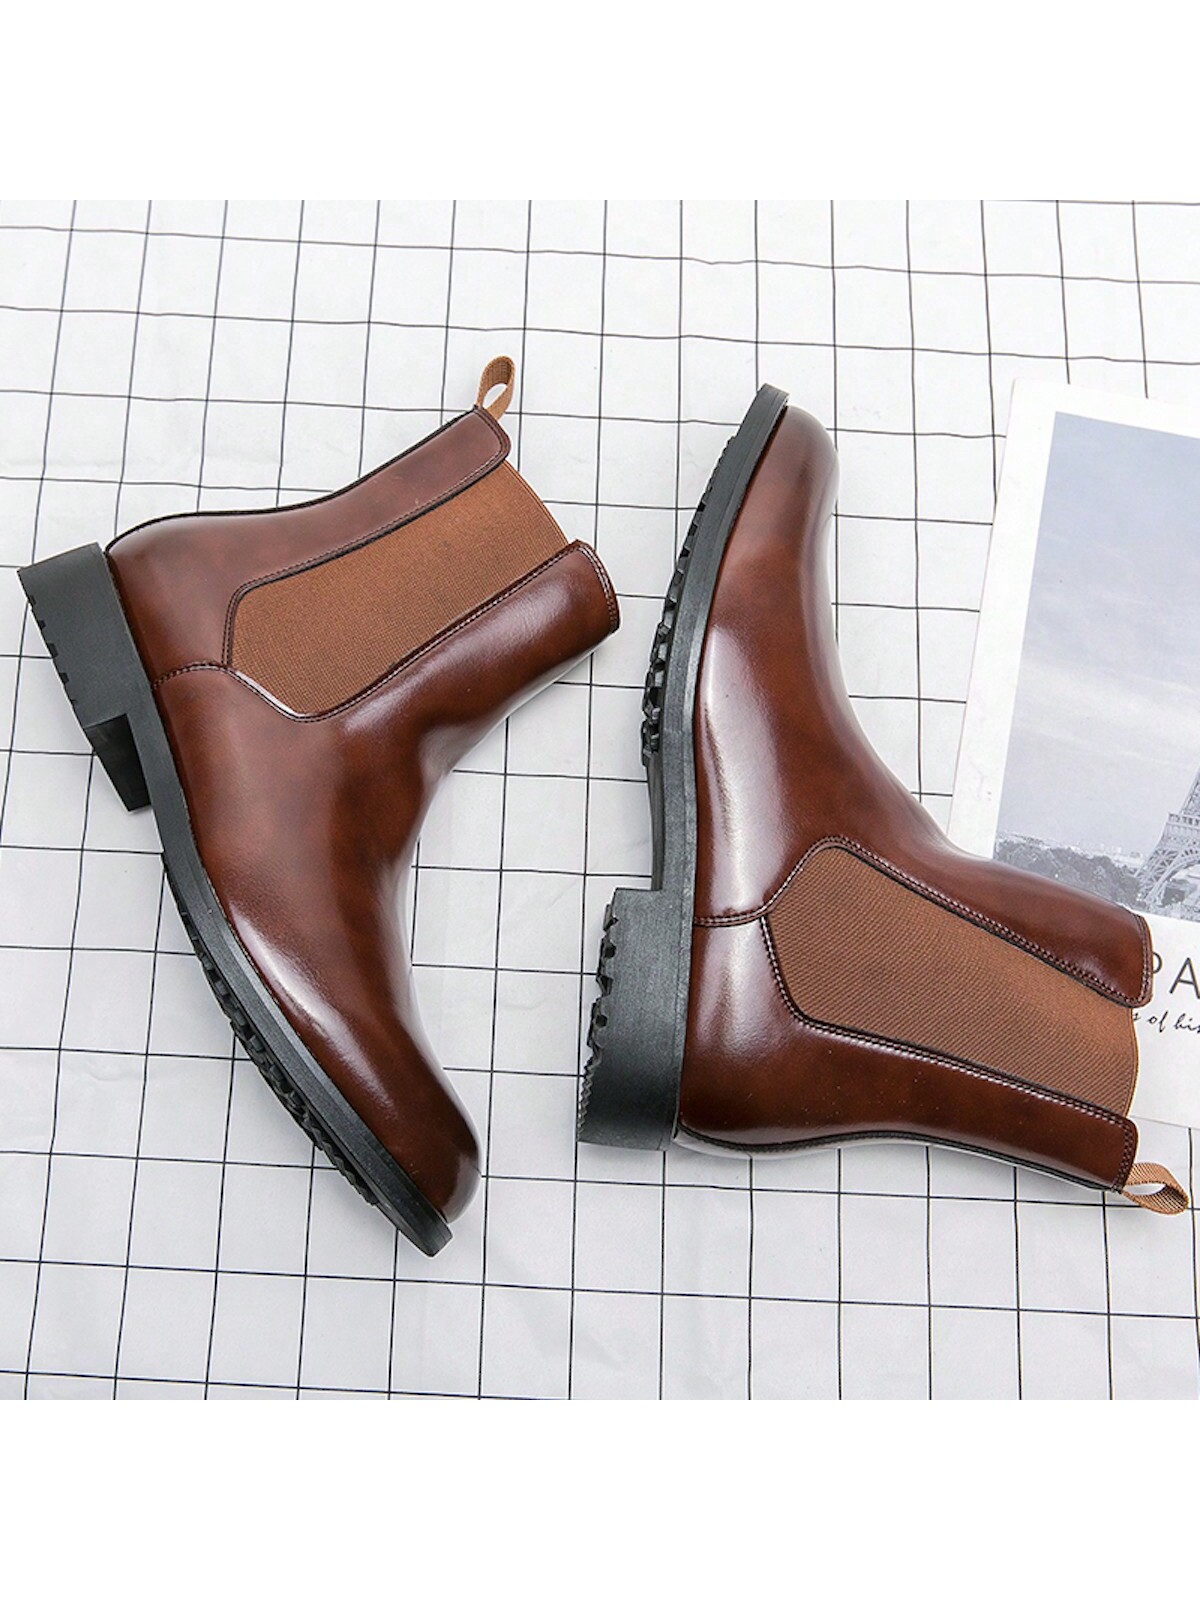 Мужская мода Ботинки Челси Высокие кожаные ботинки без шнуровки для зимнего тепла, коричневый